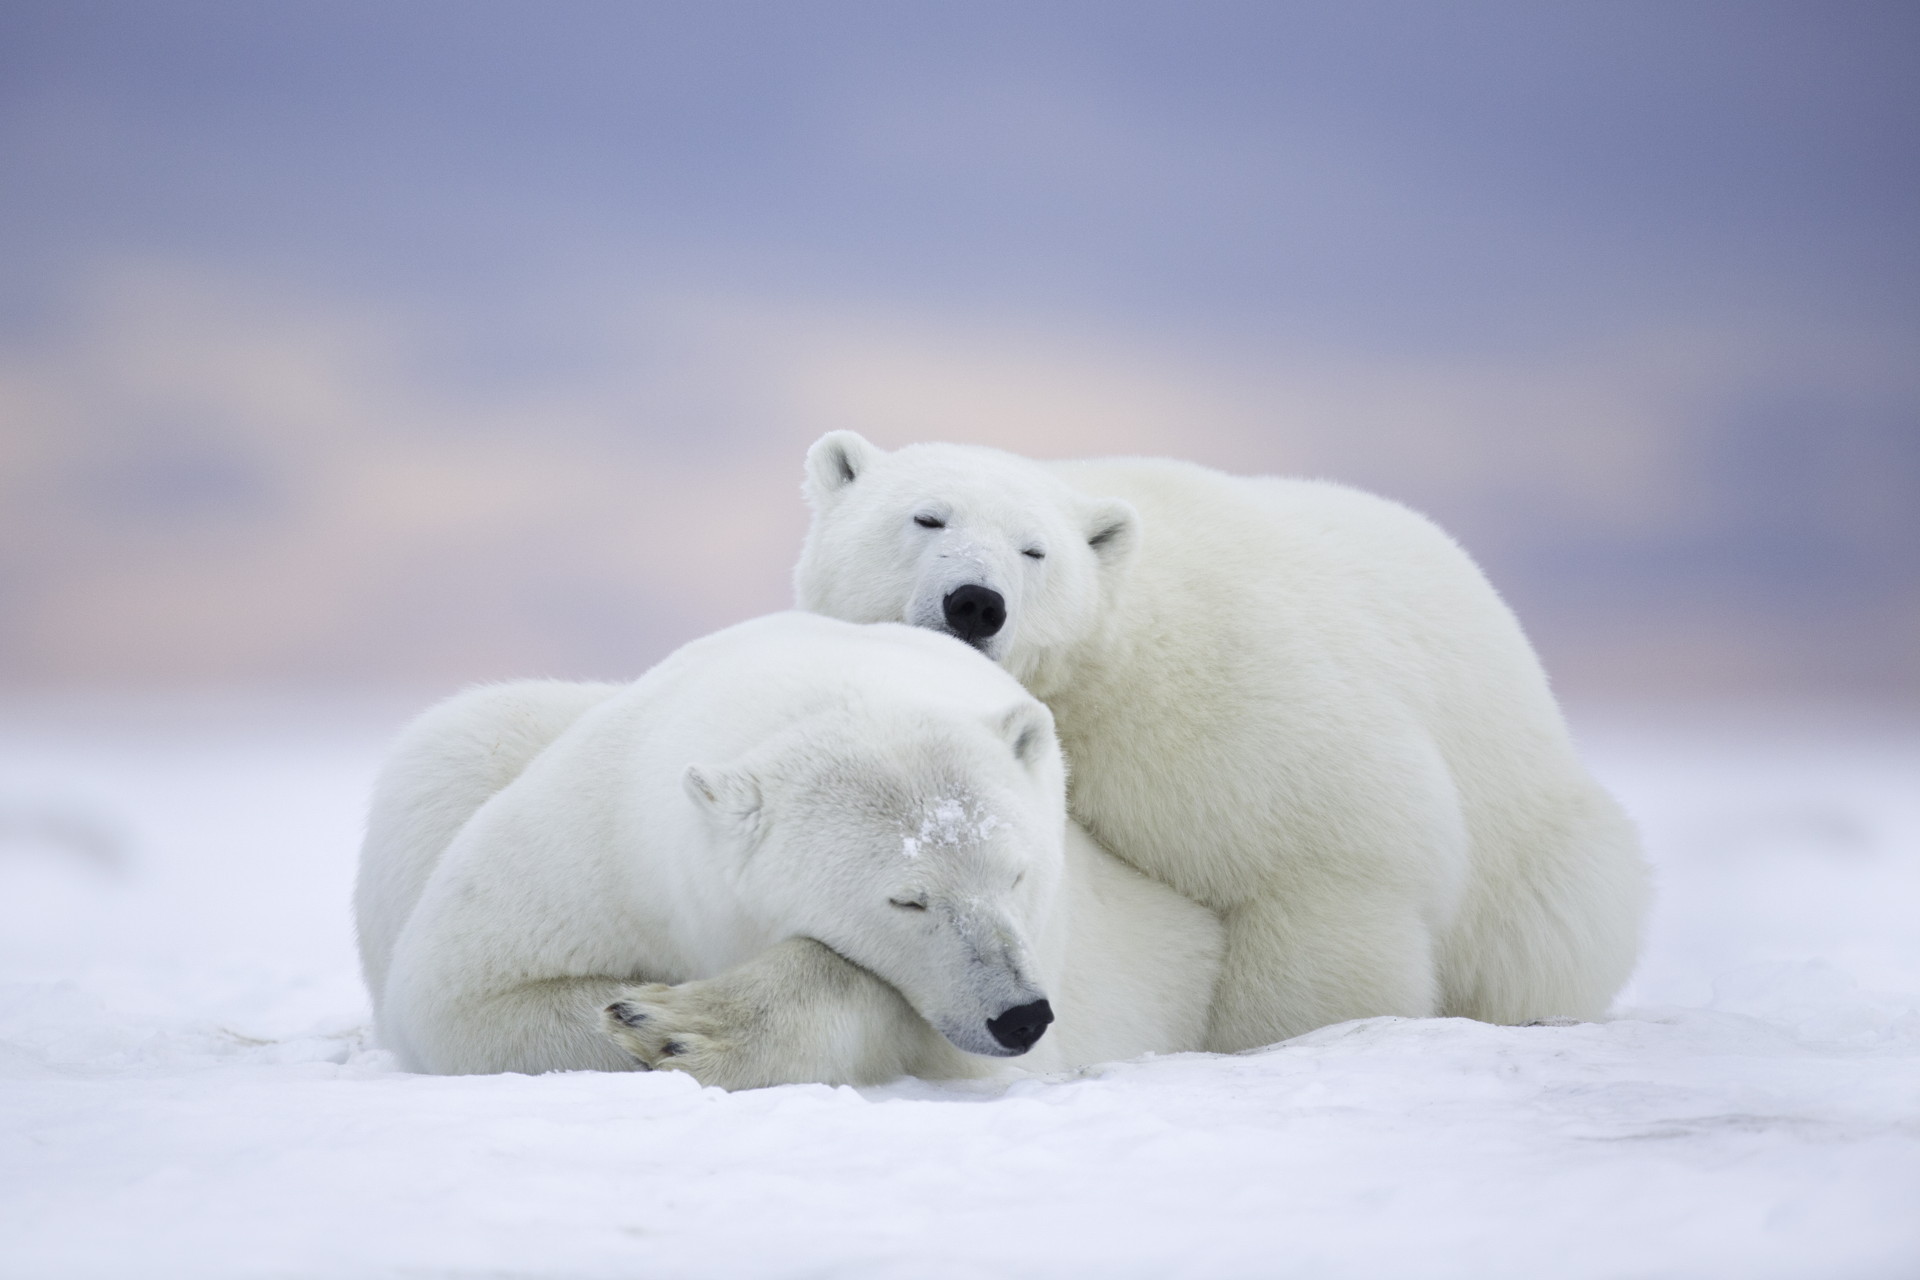 Gấu Bắc Cực luôn là một trong những sinh vật gợi cảm hứng cho nhiếp ảnh gia. Hình ảnh gấu Bắc Cực được tạo ra như thế nào và chúng có gì đặc biệt? Hãy khám phá qua hình ảnh liên quan và bạn sẽ có câu trả lời.